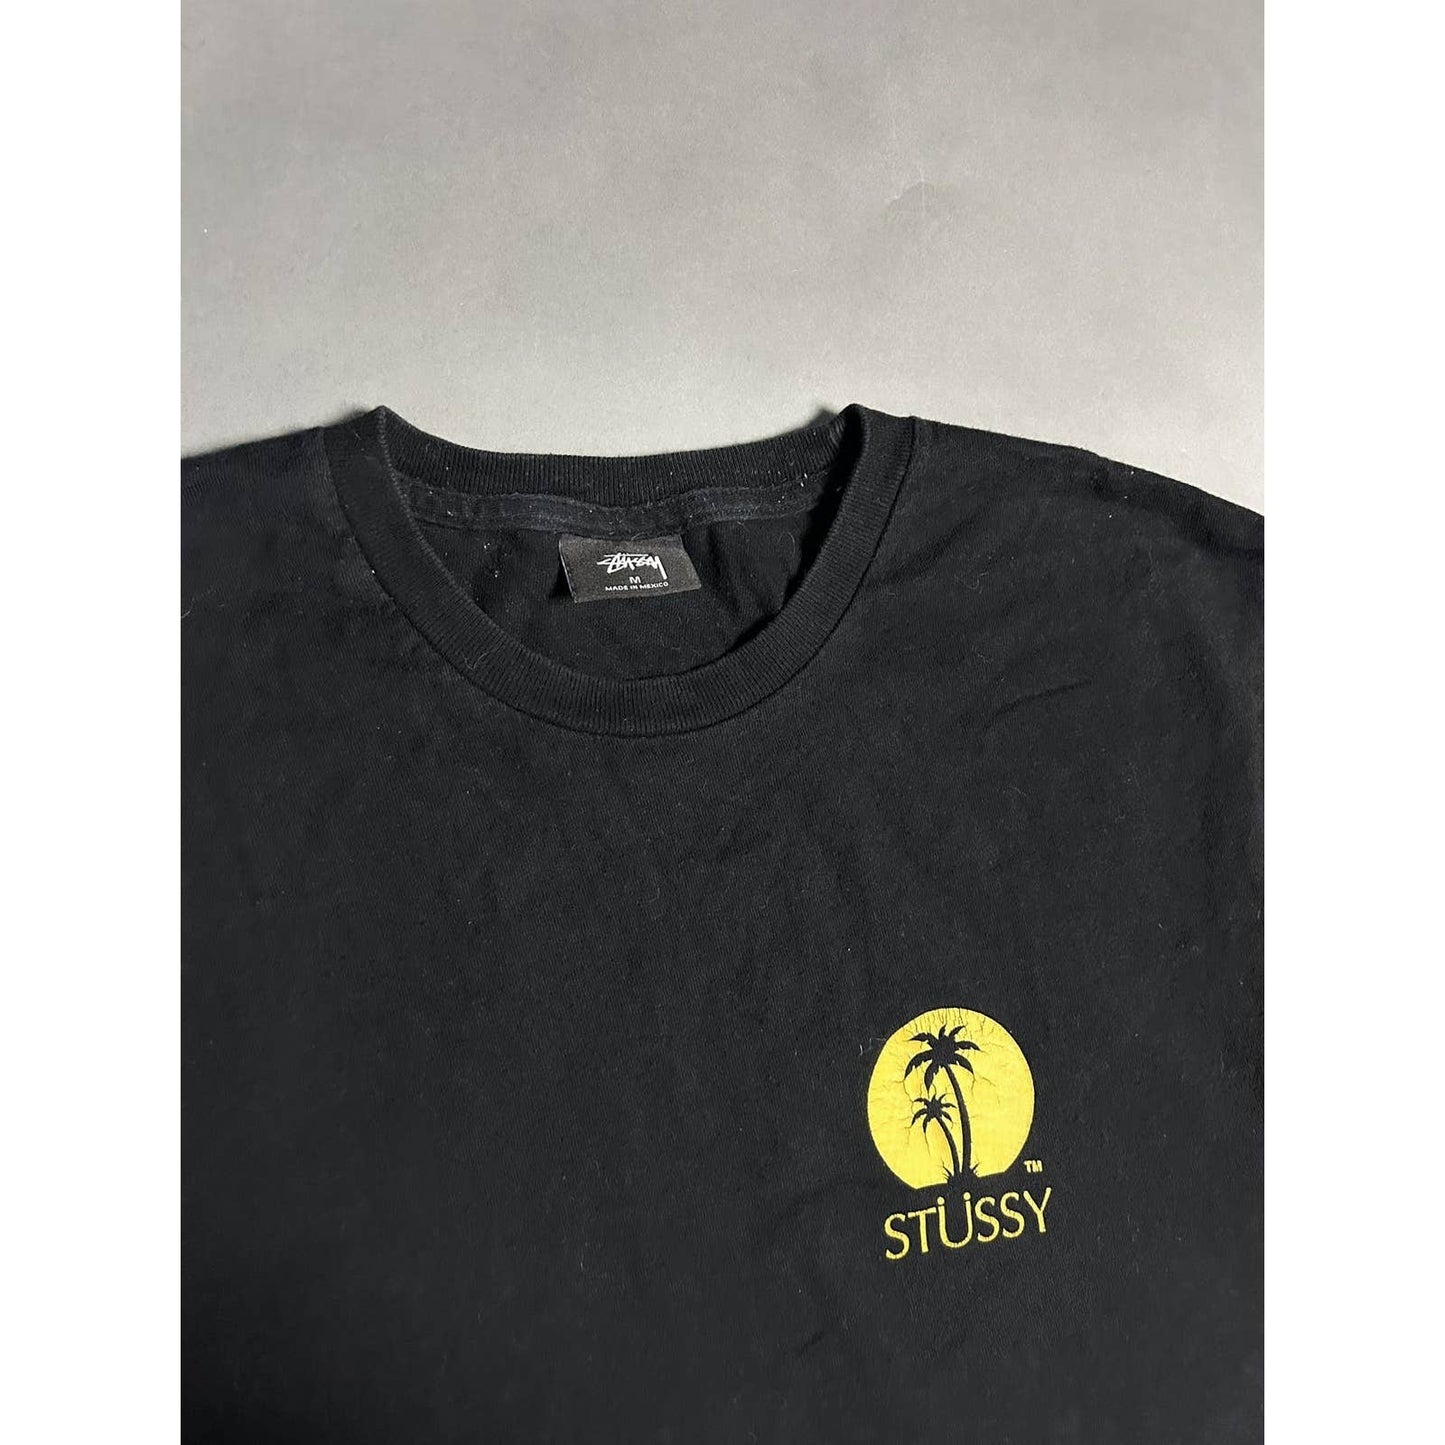 Stussy t-shirt black palms logo